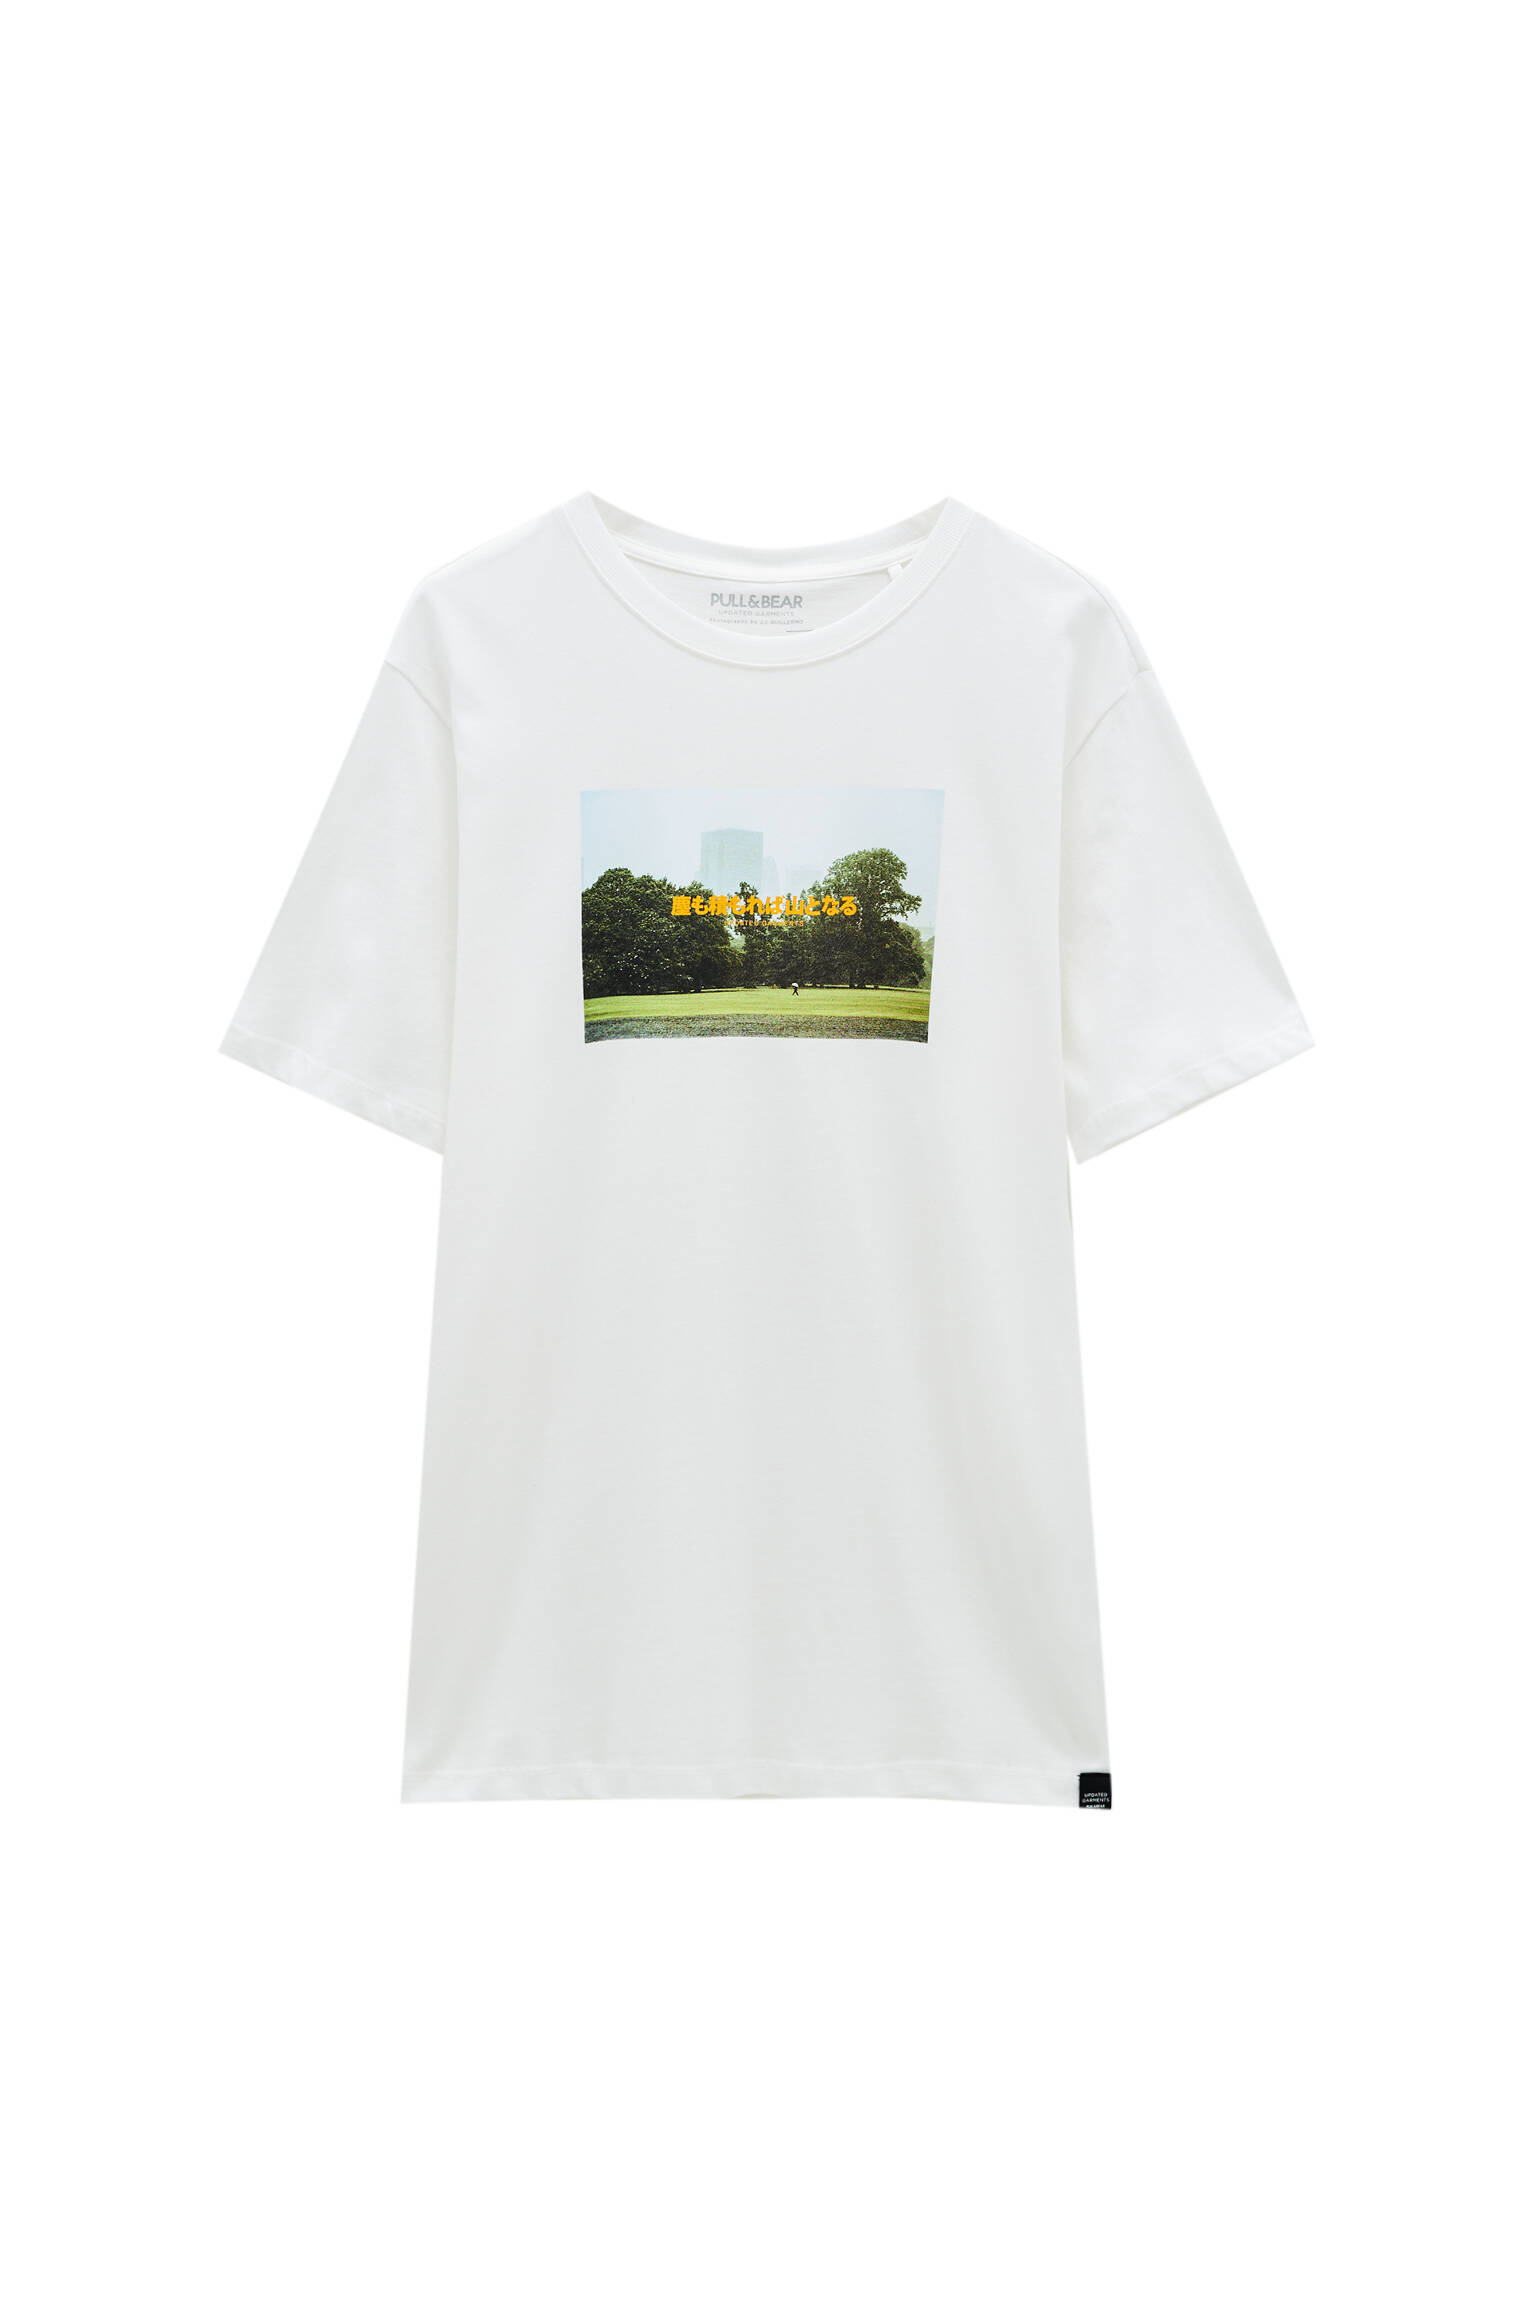 Pull&bear Homme T-shirt Blanc En Coton, à Manches Courtes Et Col Rond, Avec Imprimé Photo Et Inscrip